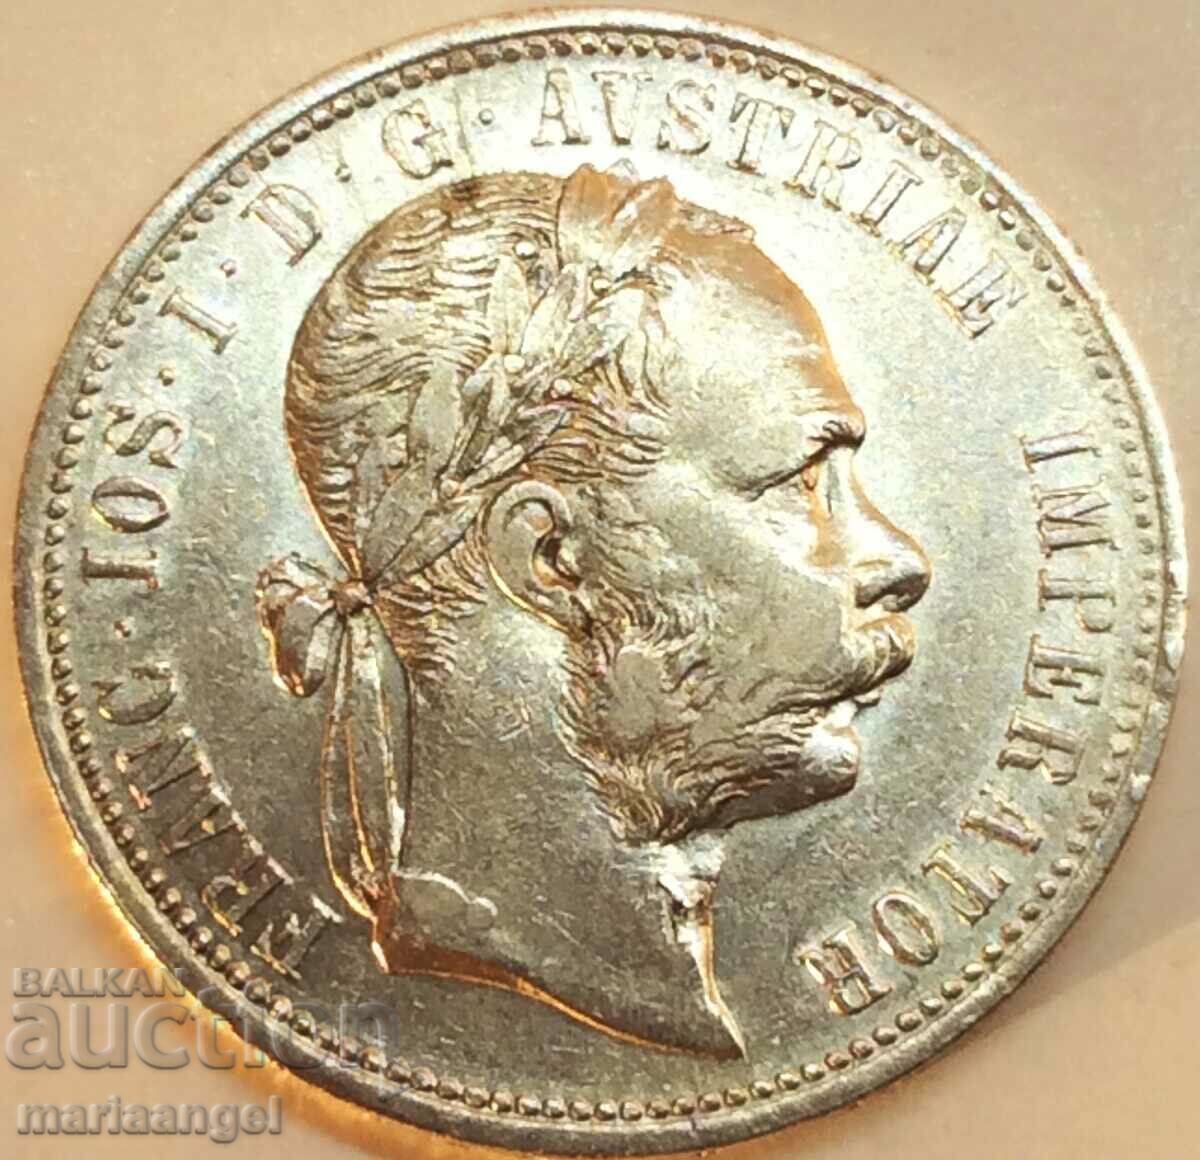 Αυστρία 1 florin 1875 Franz Joseph ασημένιο - σπάνιο έτος